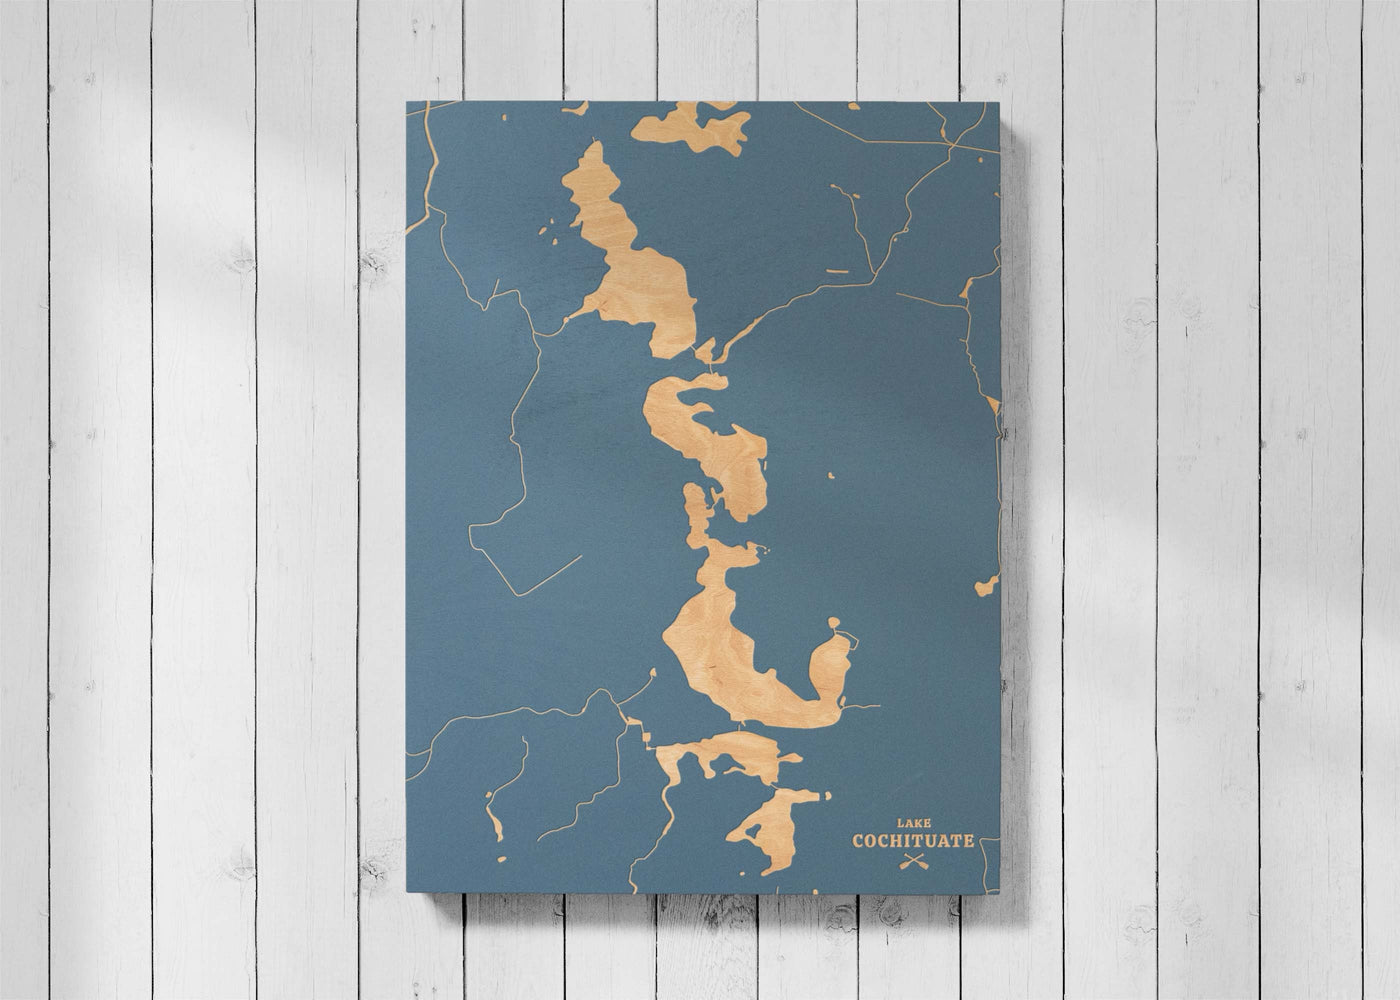 Lake Cochituate, Massachusetts Lake Map